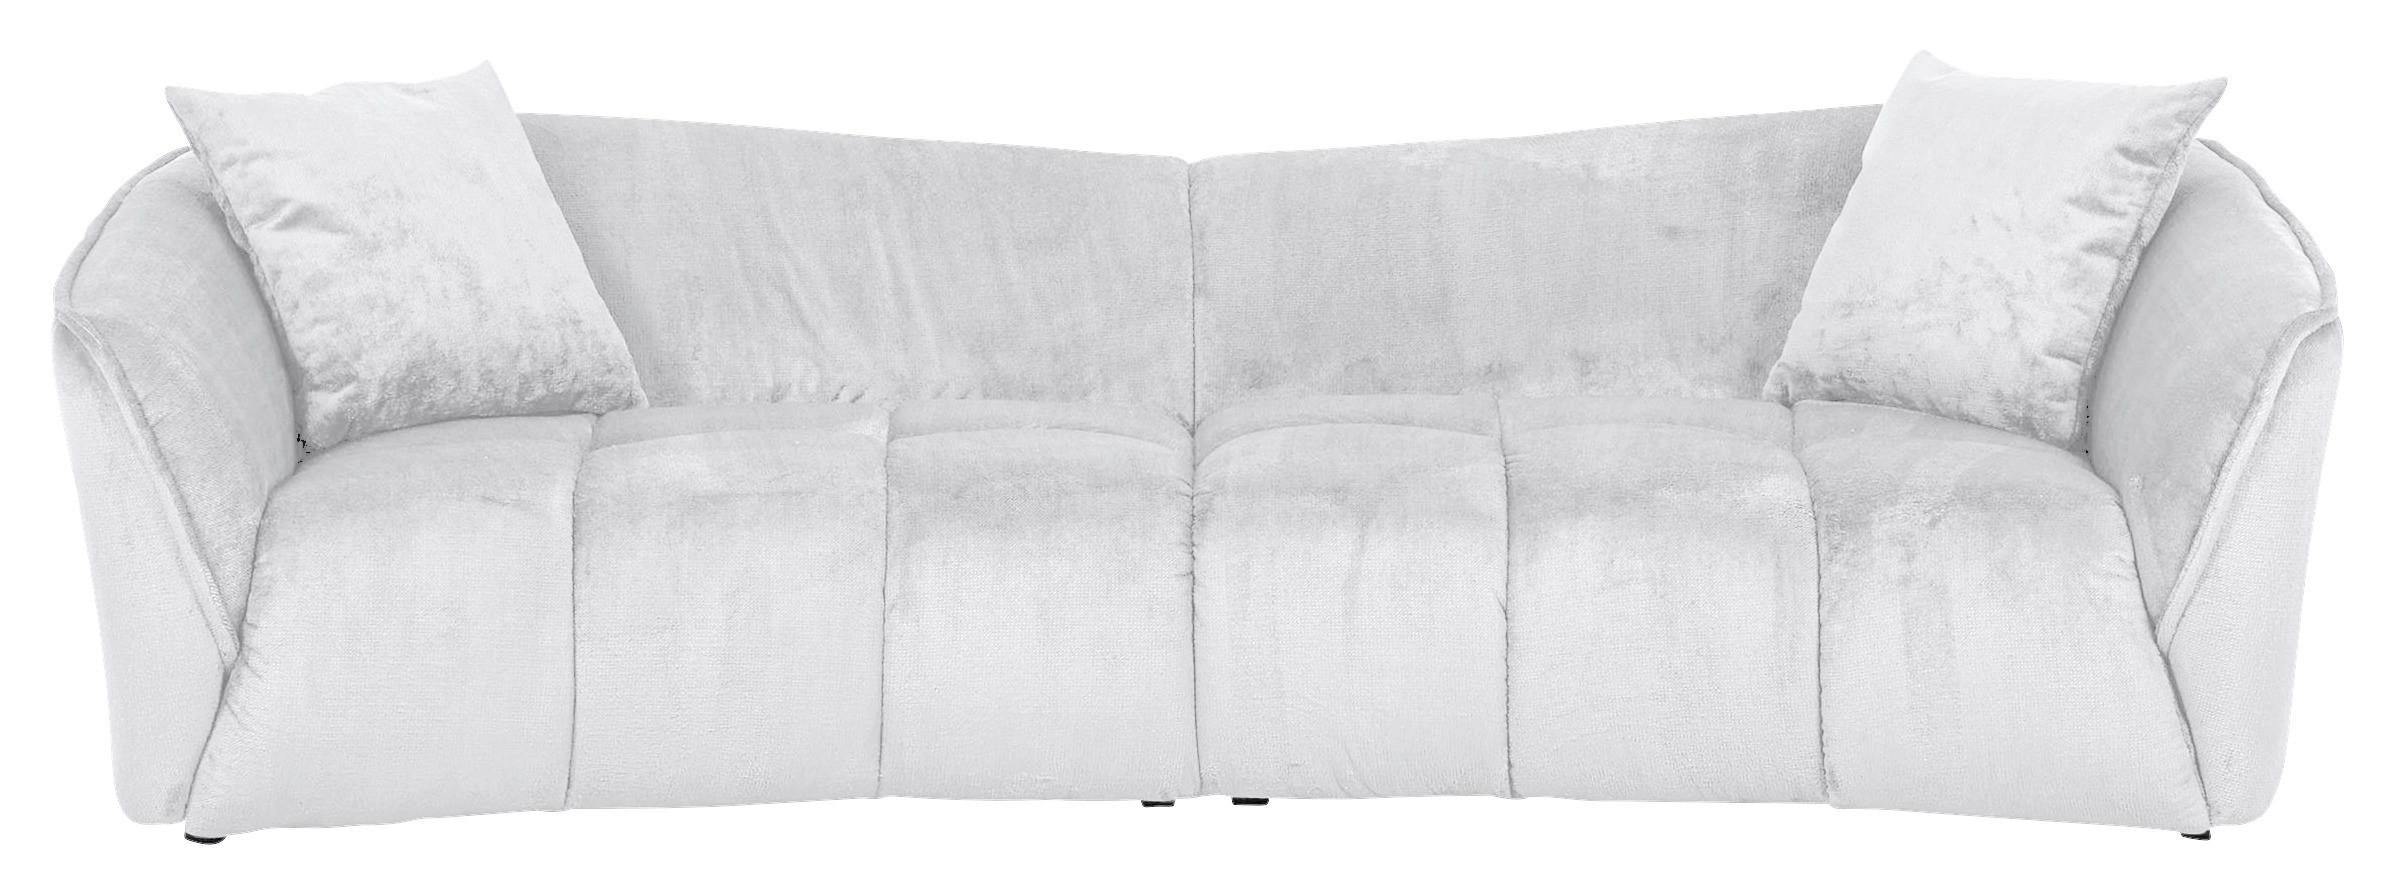 BIGSOFA Plüsch Weiß  - Schwarz/Weiß, KONVENTIONELL, Kunststoff/Textil (250/75/107cm) - Carryhome